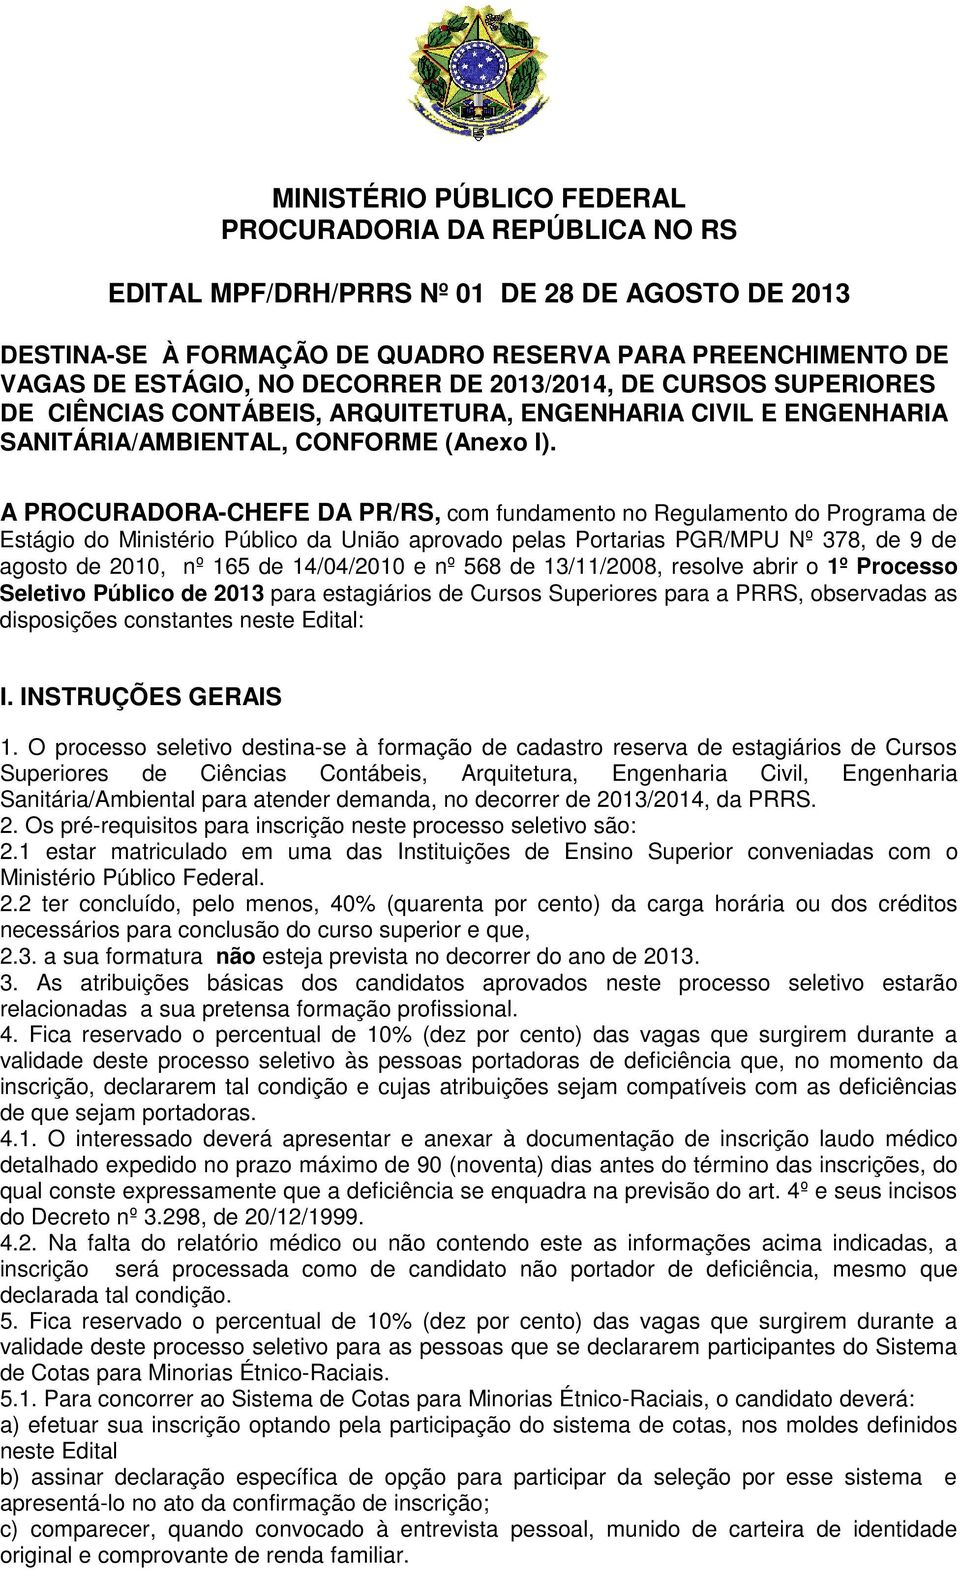 A PROCURADORA-CHEFE DA PR/RS, com fundamento no Regulamento do Programa de Estágio do Ministério Público da União aprovado pelas Portarias PGR/MPU Nº 378, de 9 de agosto de 2010, nº 165 de 14/04/2010